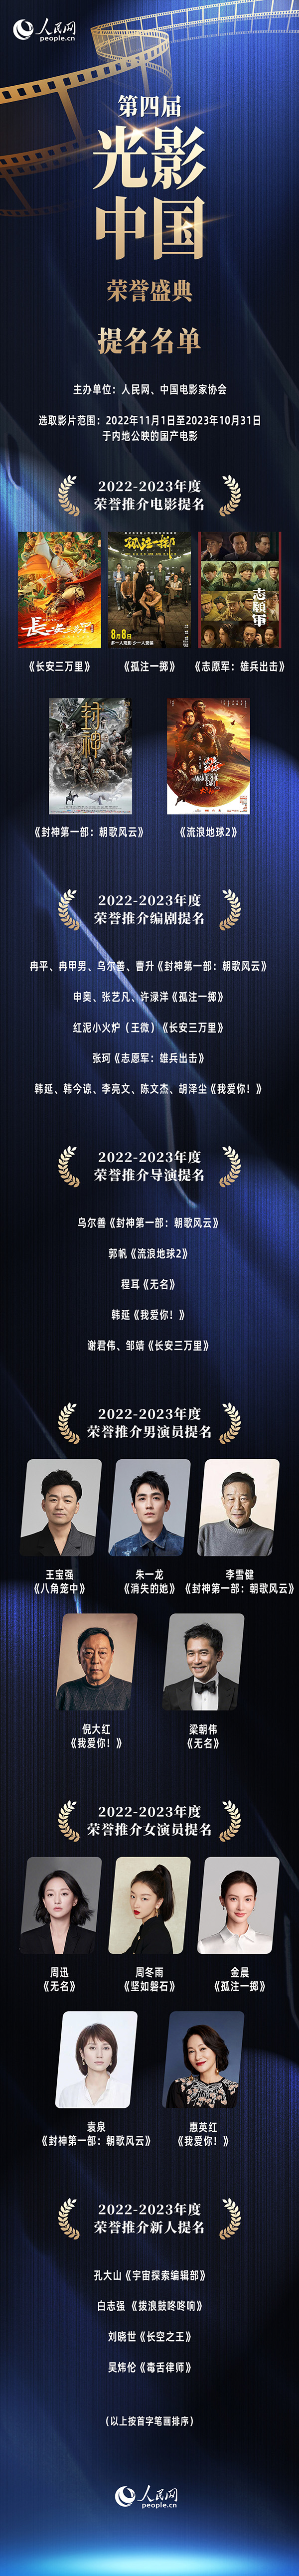 第四届“光影中国”荣誉盛典即将举办 提名名单揭晓